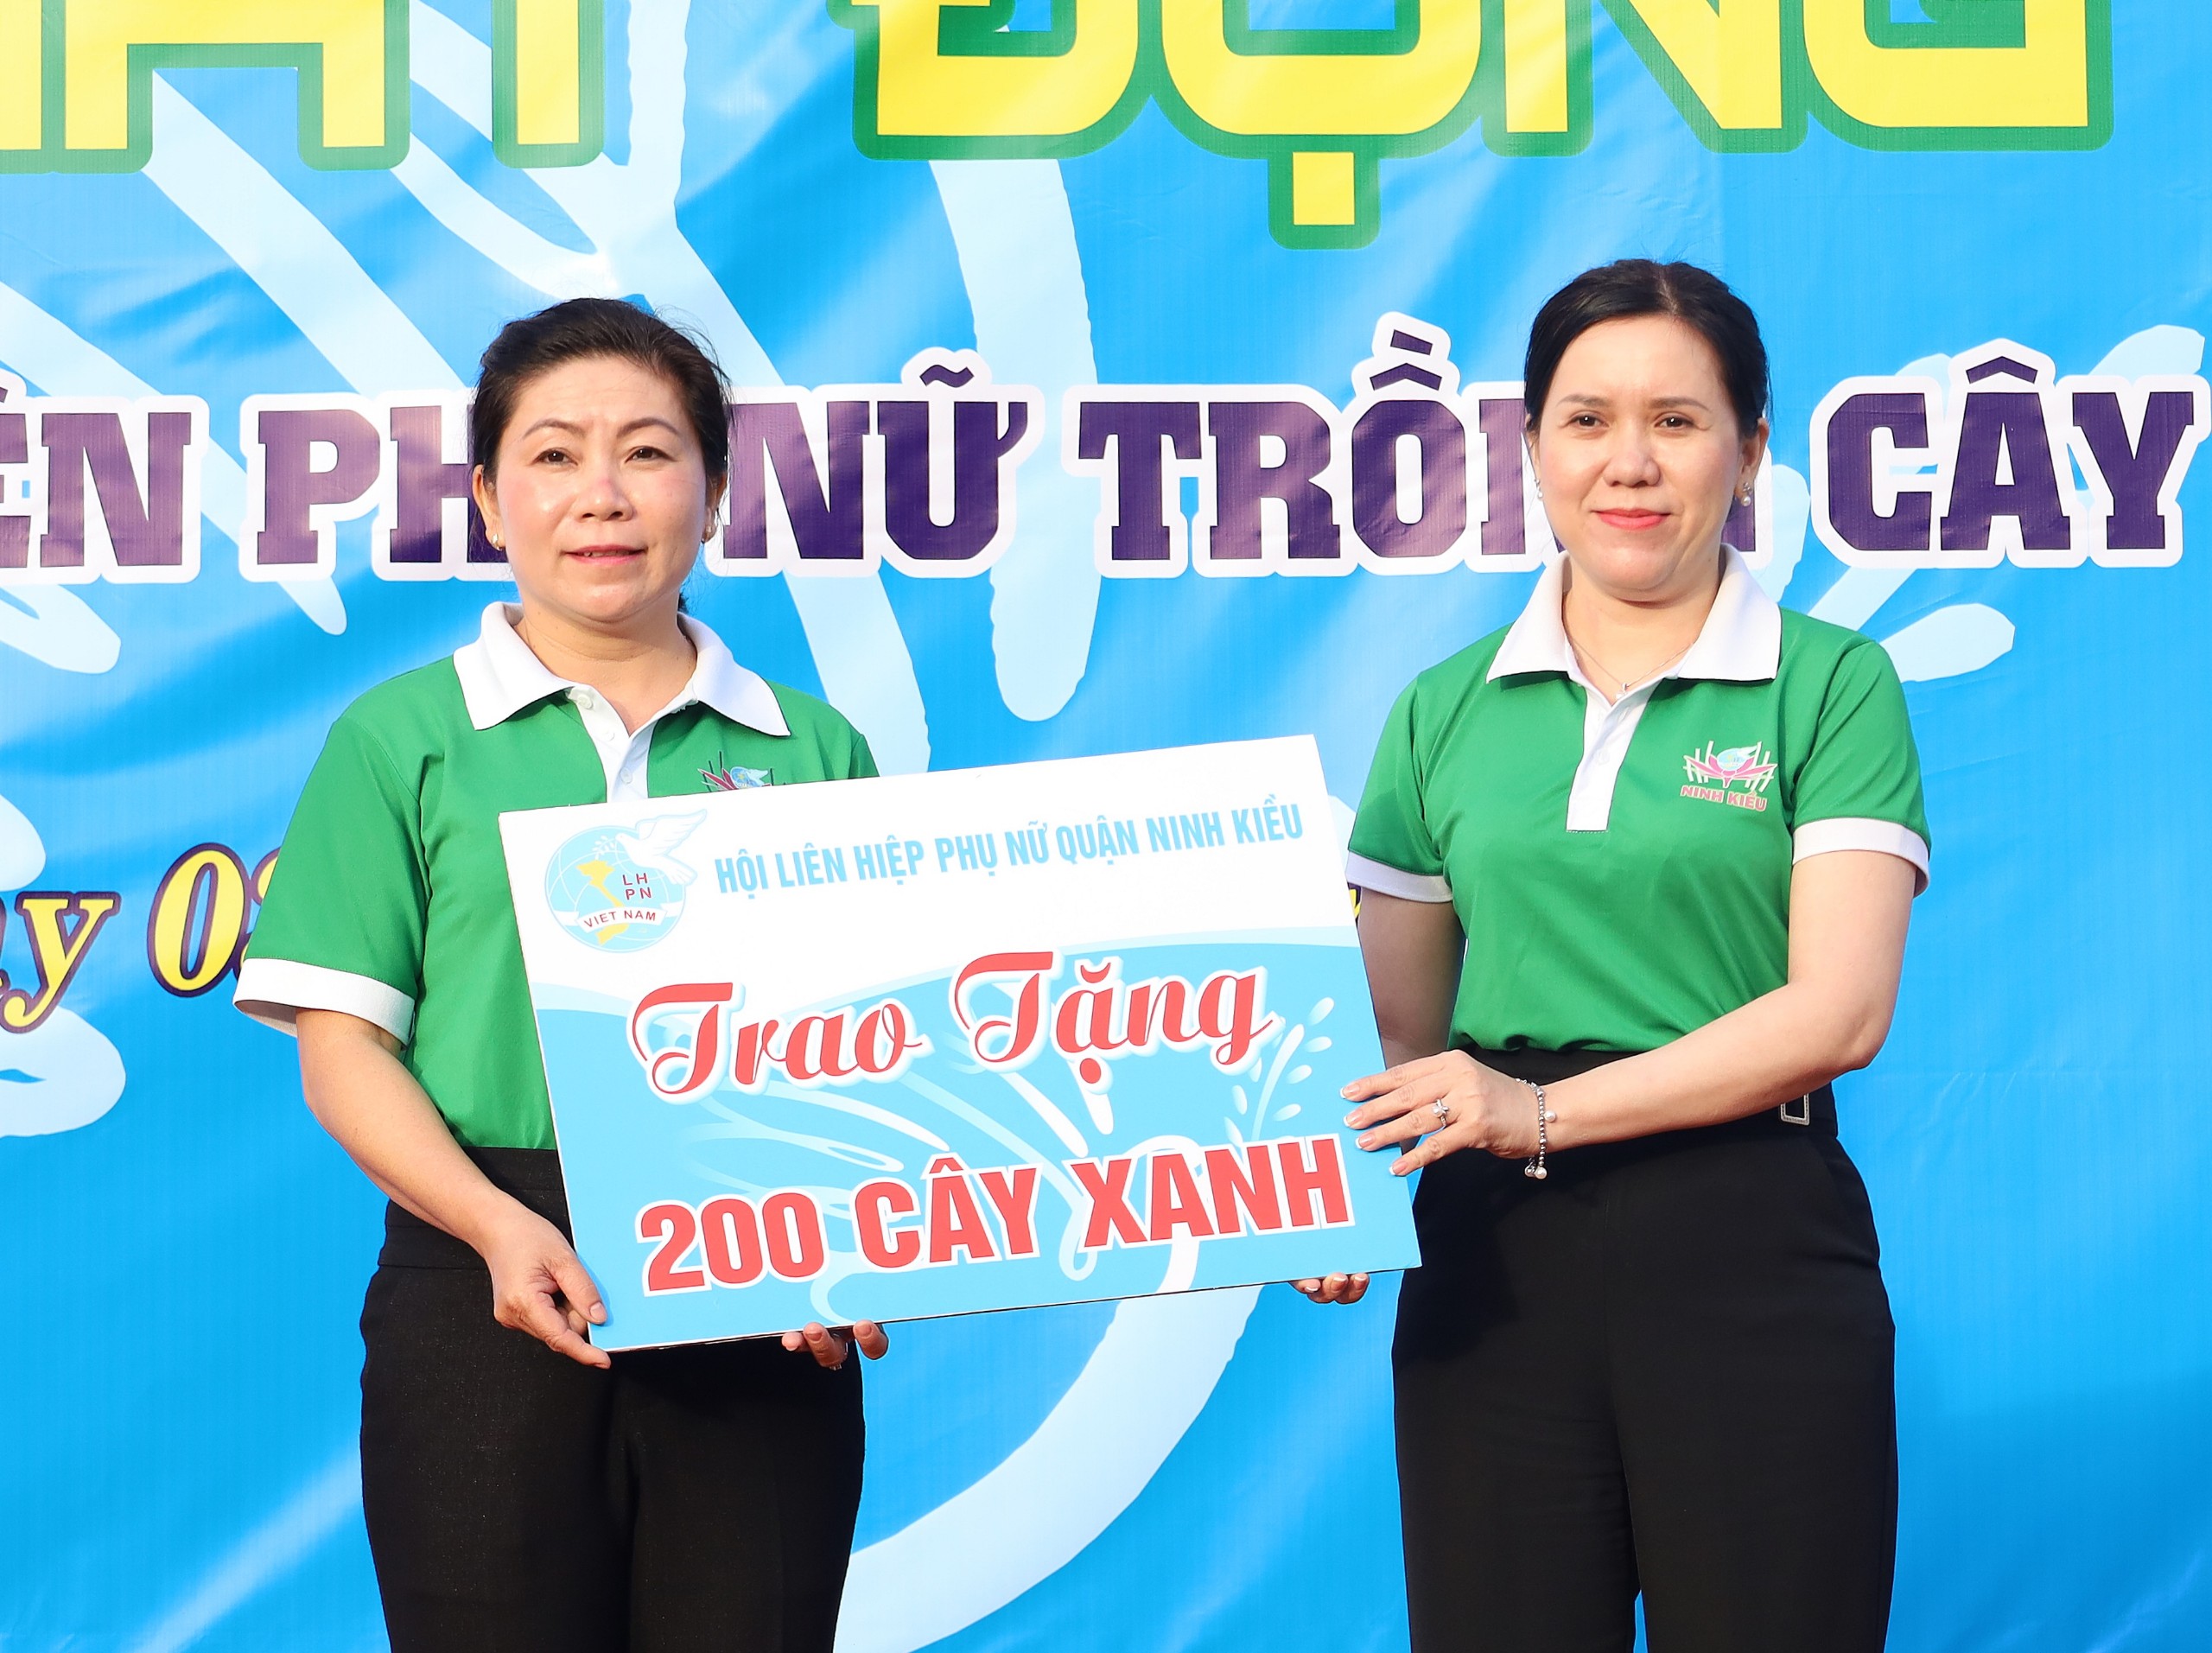 Hội LHPN quận Ninh Kiều đã trao tặng cho Hội LHPN phường An Bình 200 cây xanh gồm chuỗi ngọc và cây điệp, tổng trị giá 4,5 triệu đồng.